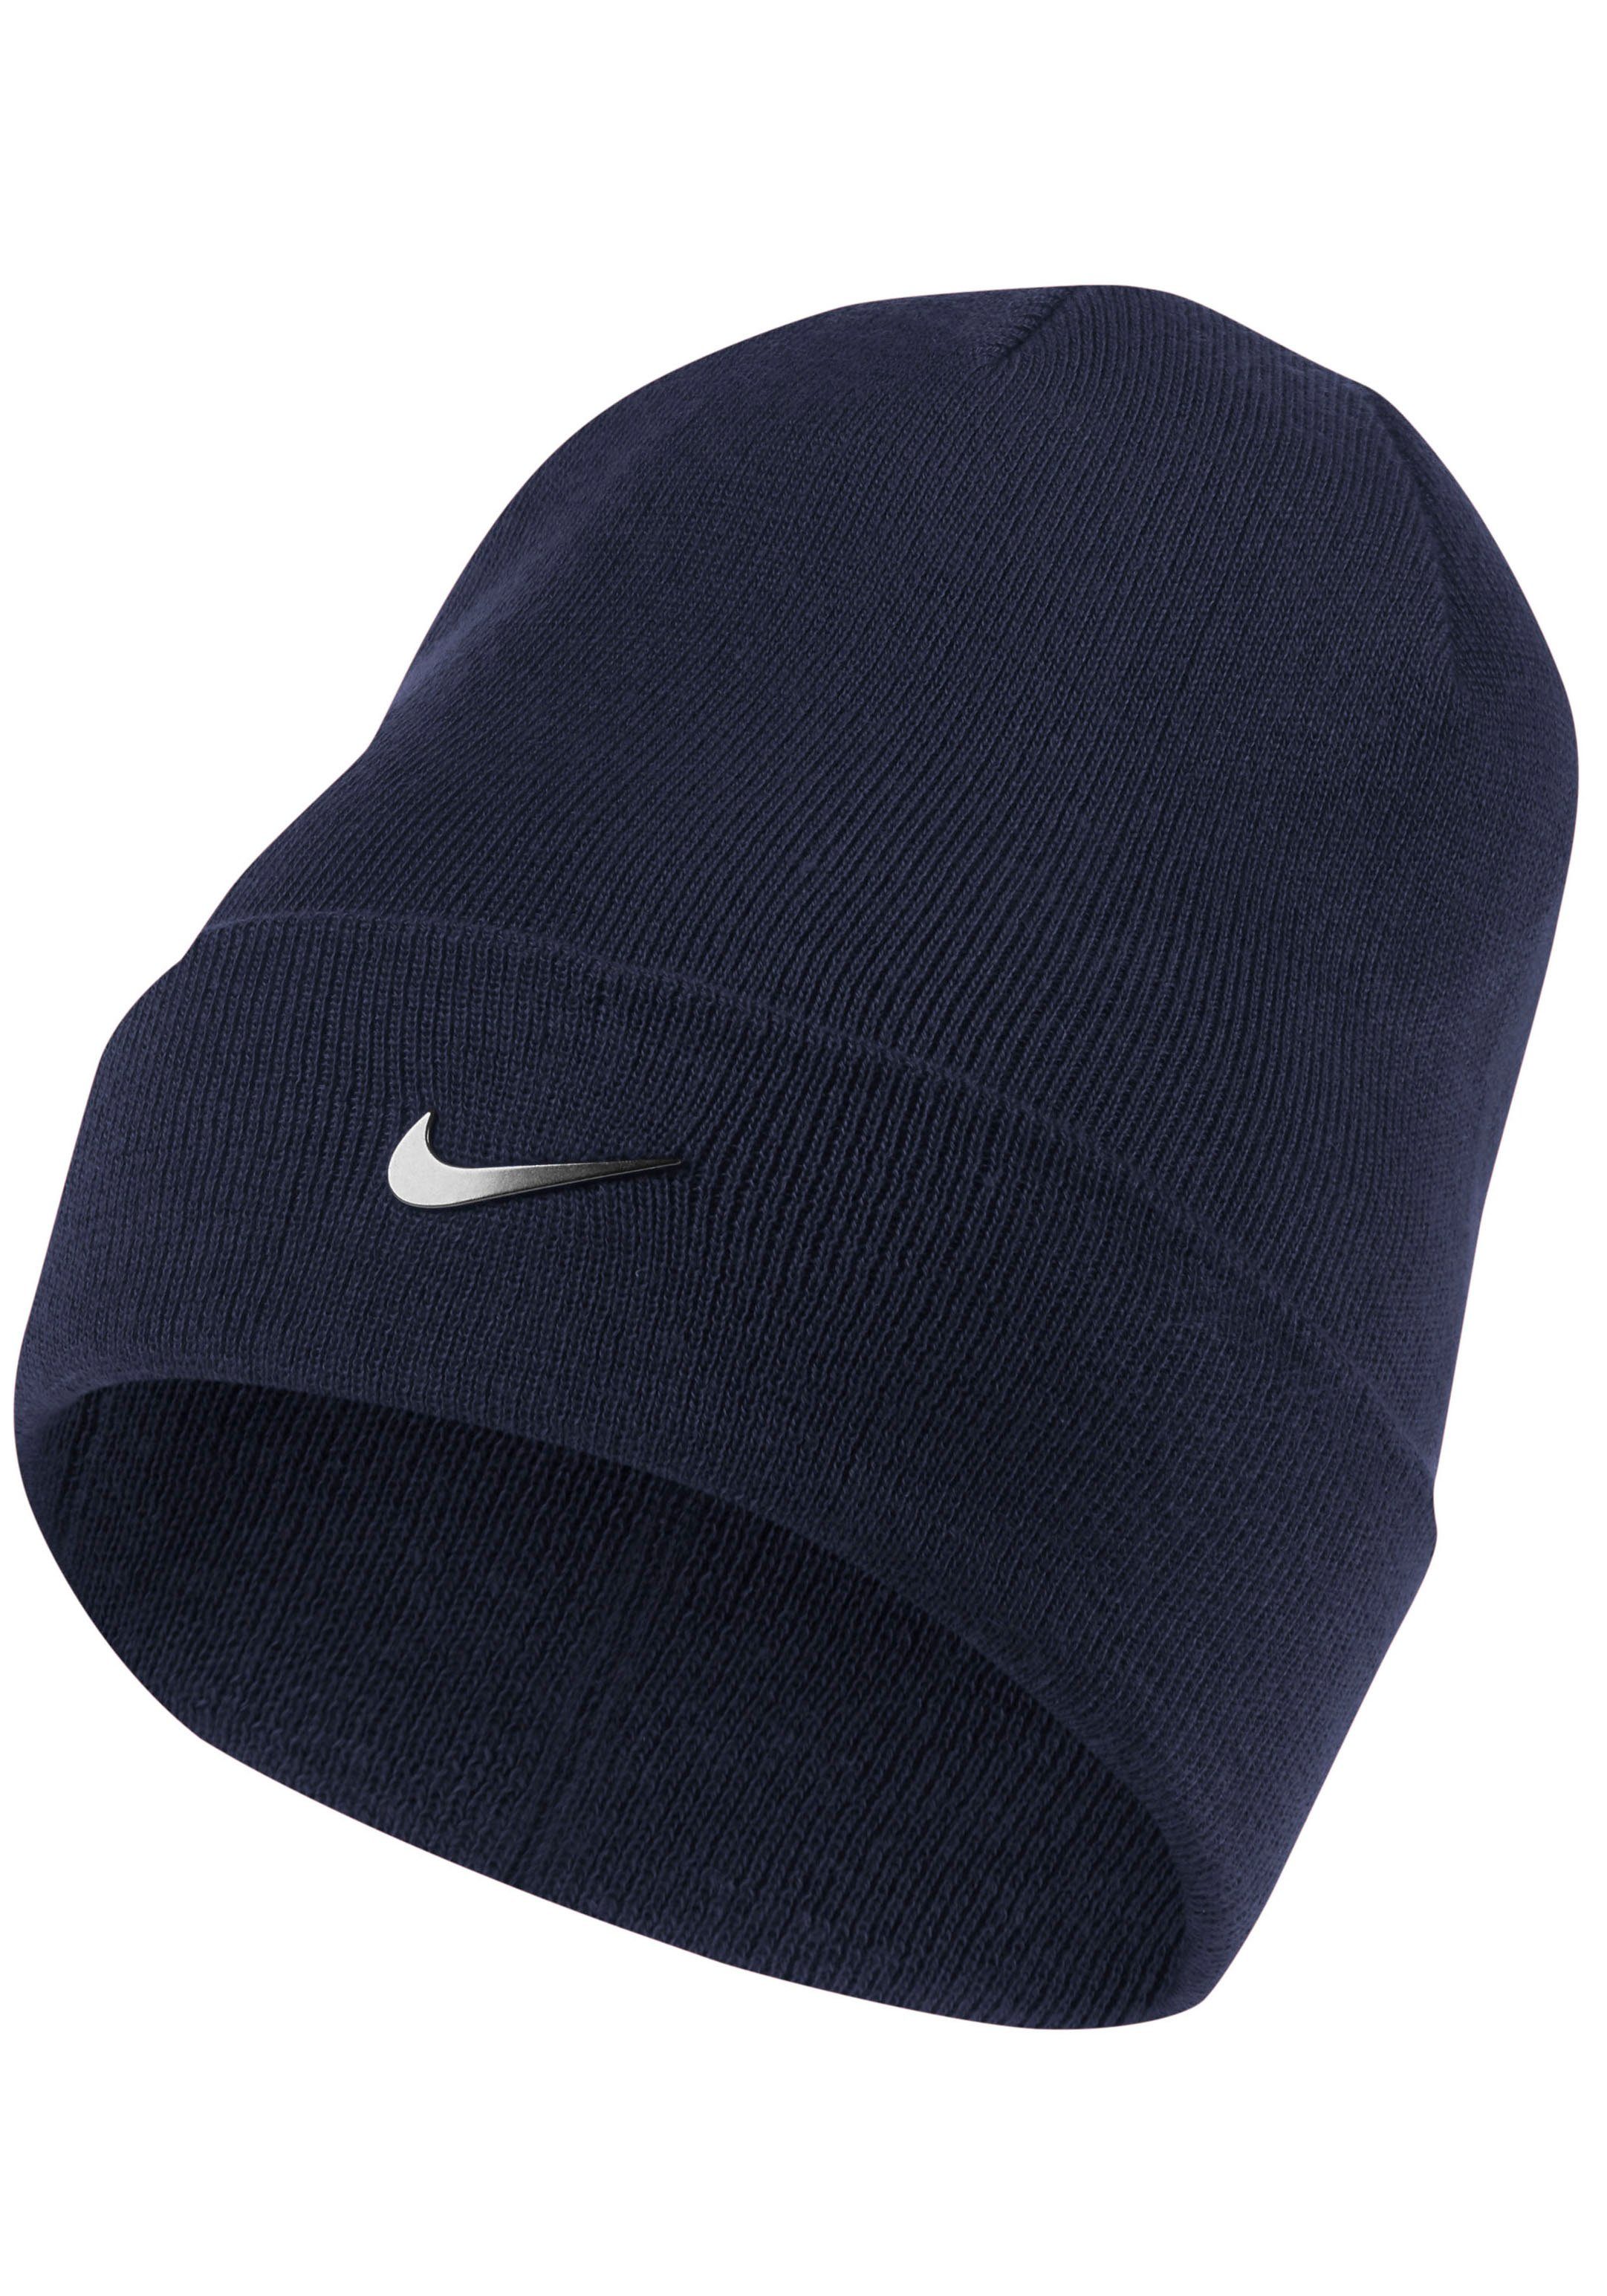 Nike Mütze online kaufen | OTTO